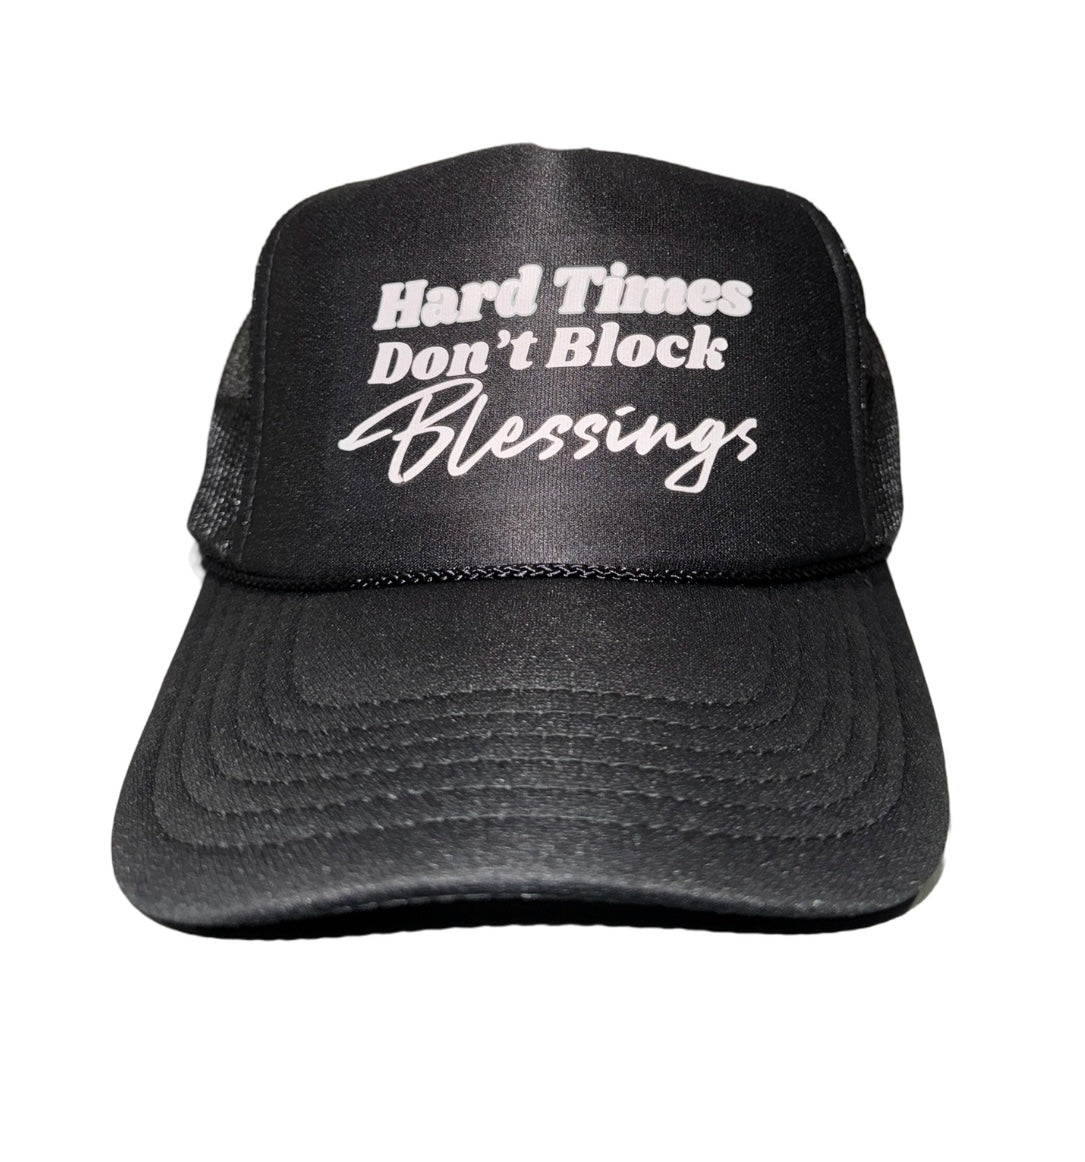 BLESSINGS TRUCKER HAT